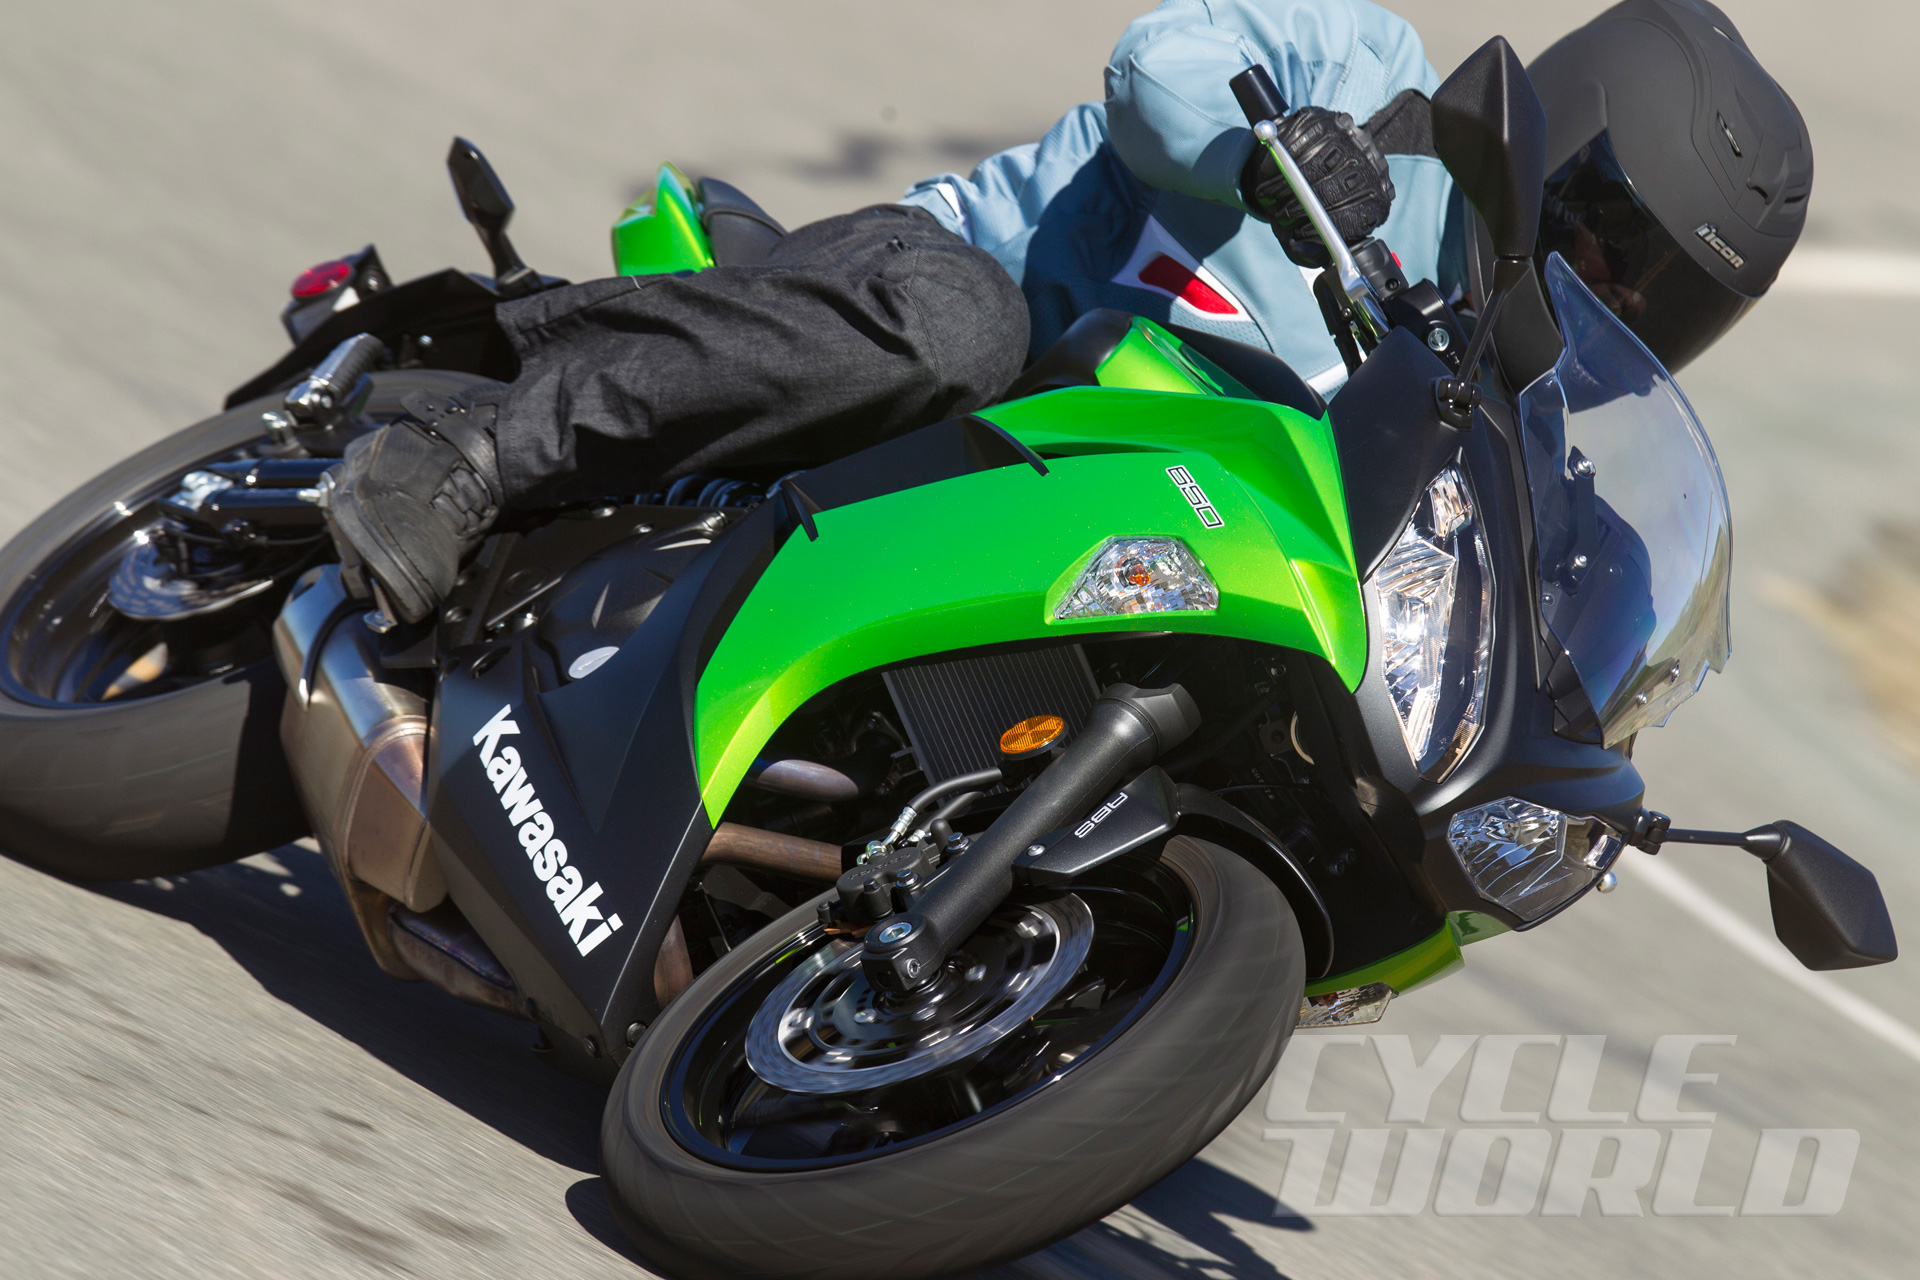 bar Fra film Affordable and Best Value Motorcycles: Kawasaki Ninja 650 | Cycle World